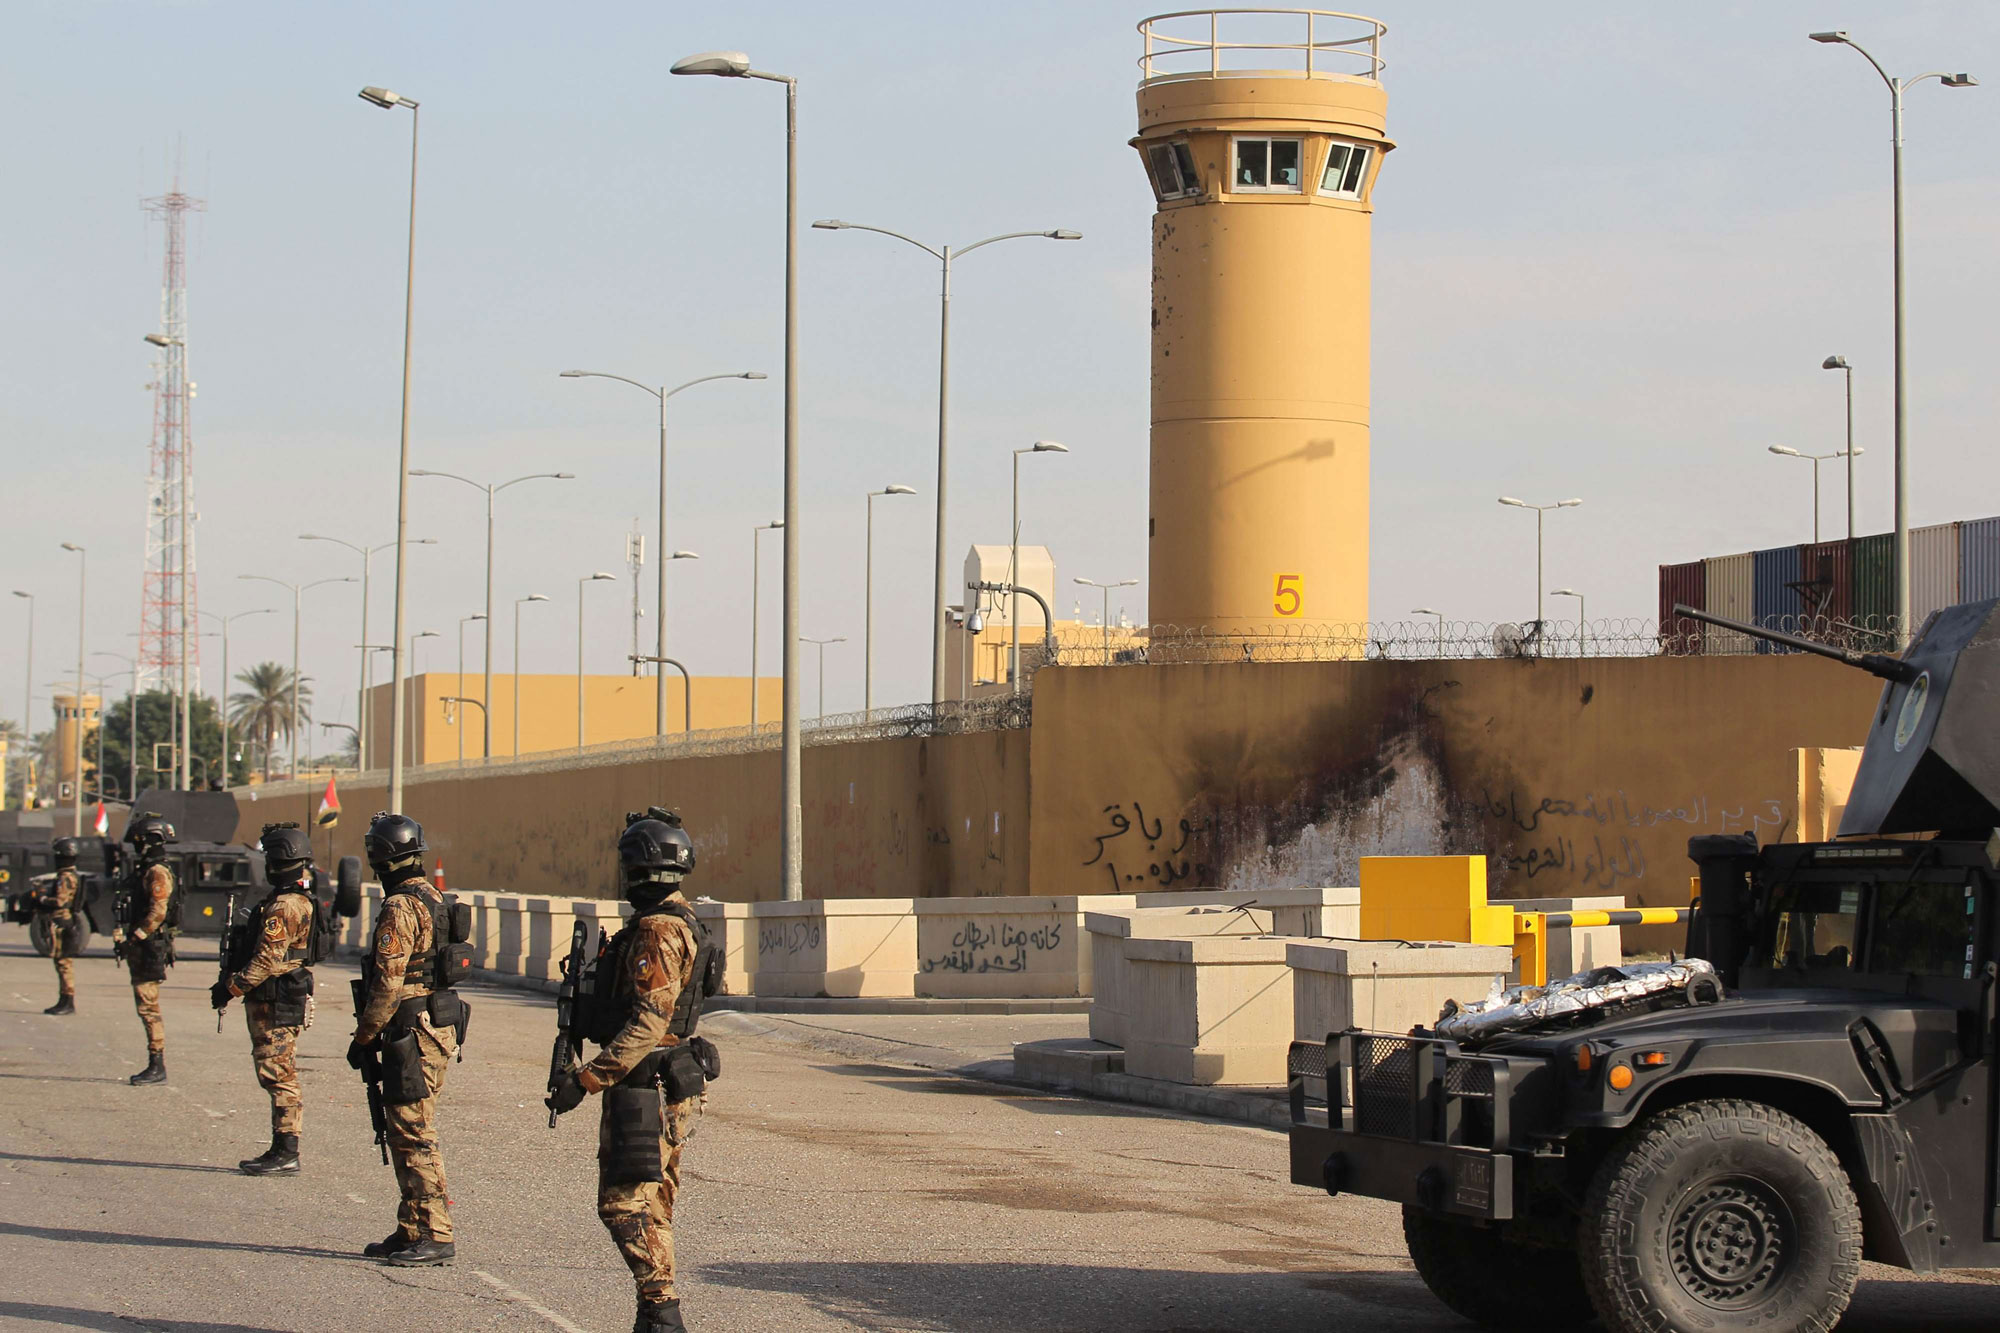 عناصر من جهاز مكافحة الإرهاب العراقي انتشرت أمام السفارة الأميركية لحمايتها بعد محاولة اقتحامها من أنصار الحشد